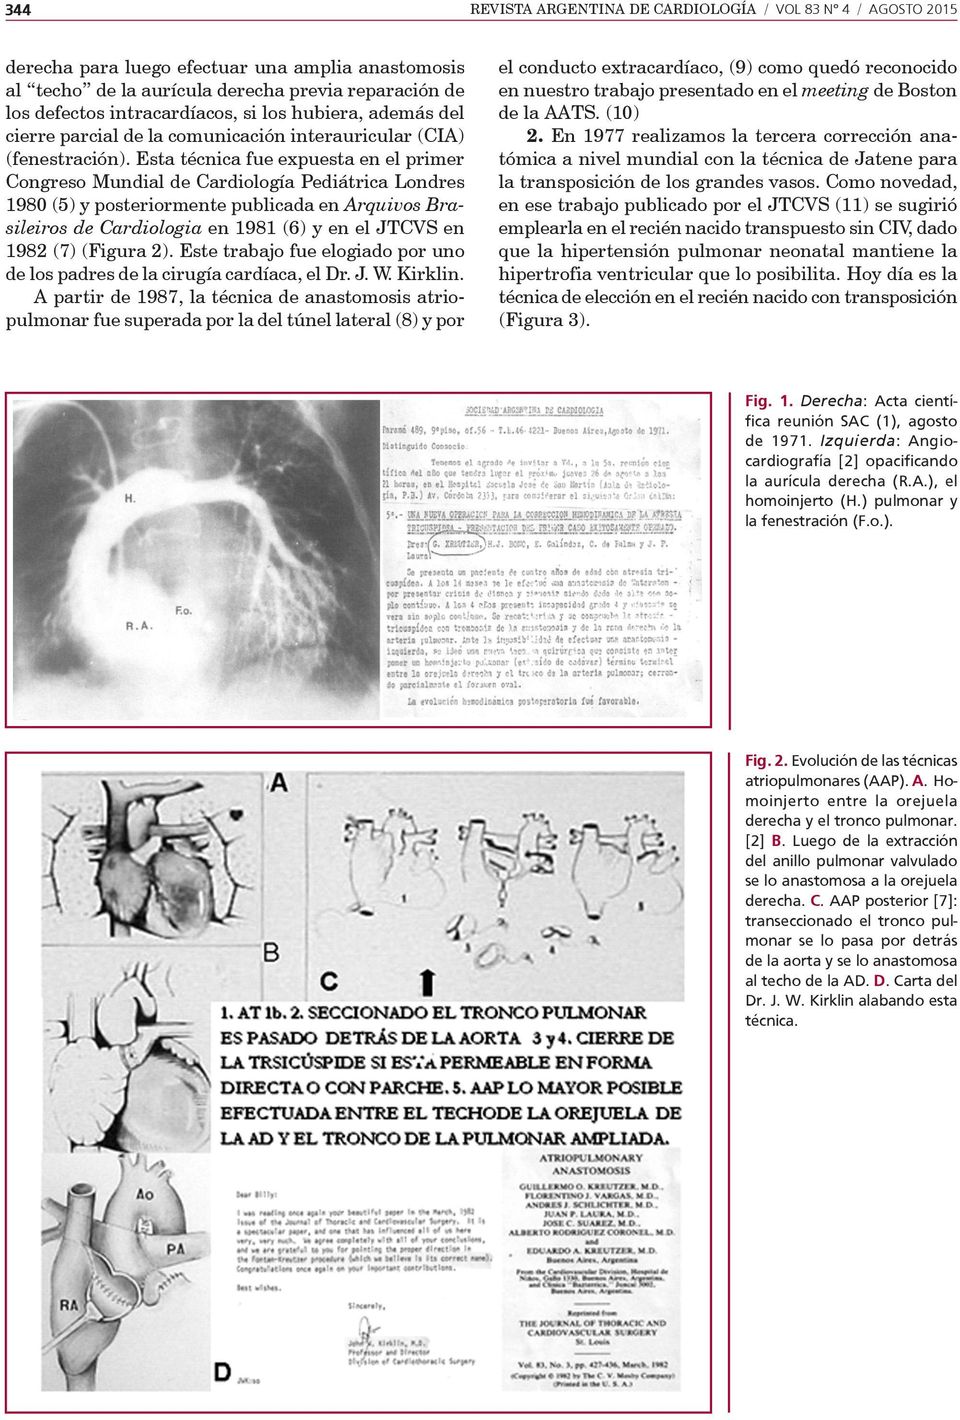 Esta técnica fue expuesta en el primer Congreso Mundial de Cardiología Pediátrica Londres 1980 (5) y posteriormente publicada en Arquivos Brasileiros de Cardiologia en 1981 (6) y en el JTCVS en 1982